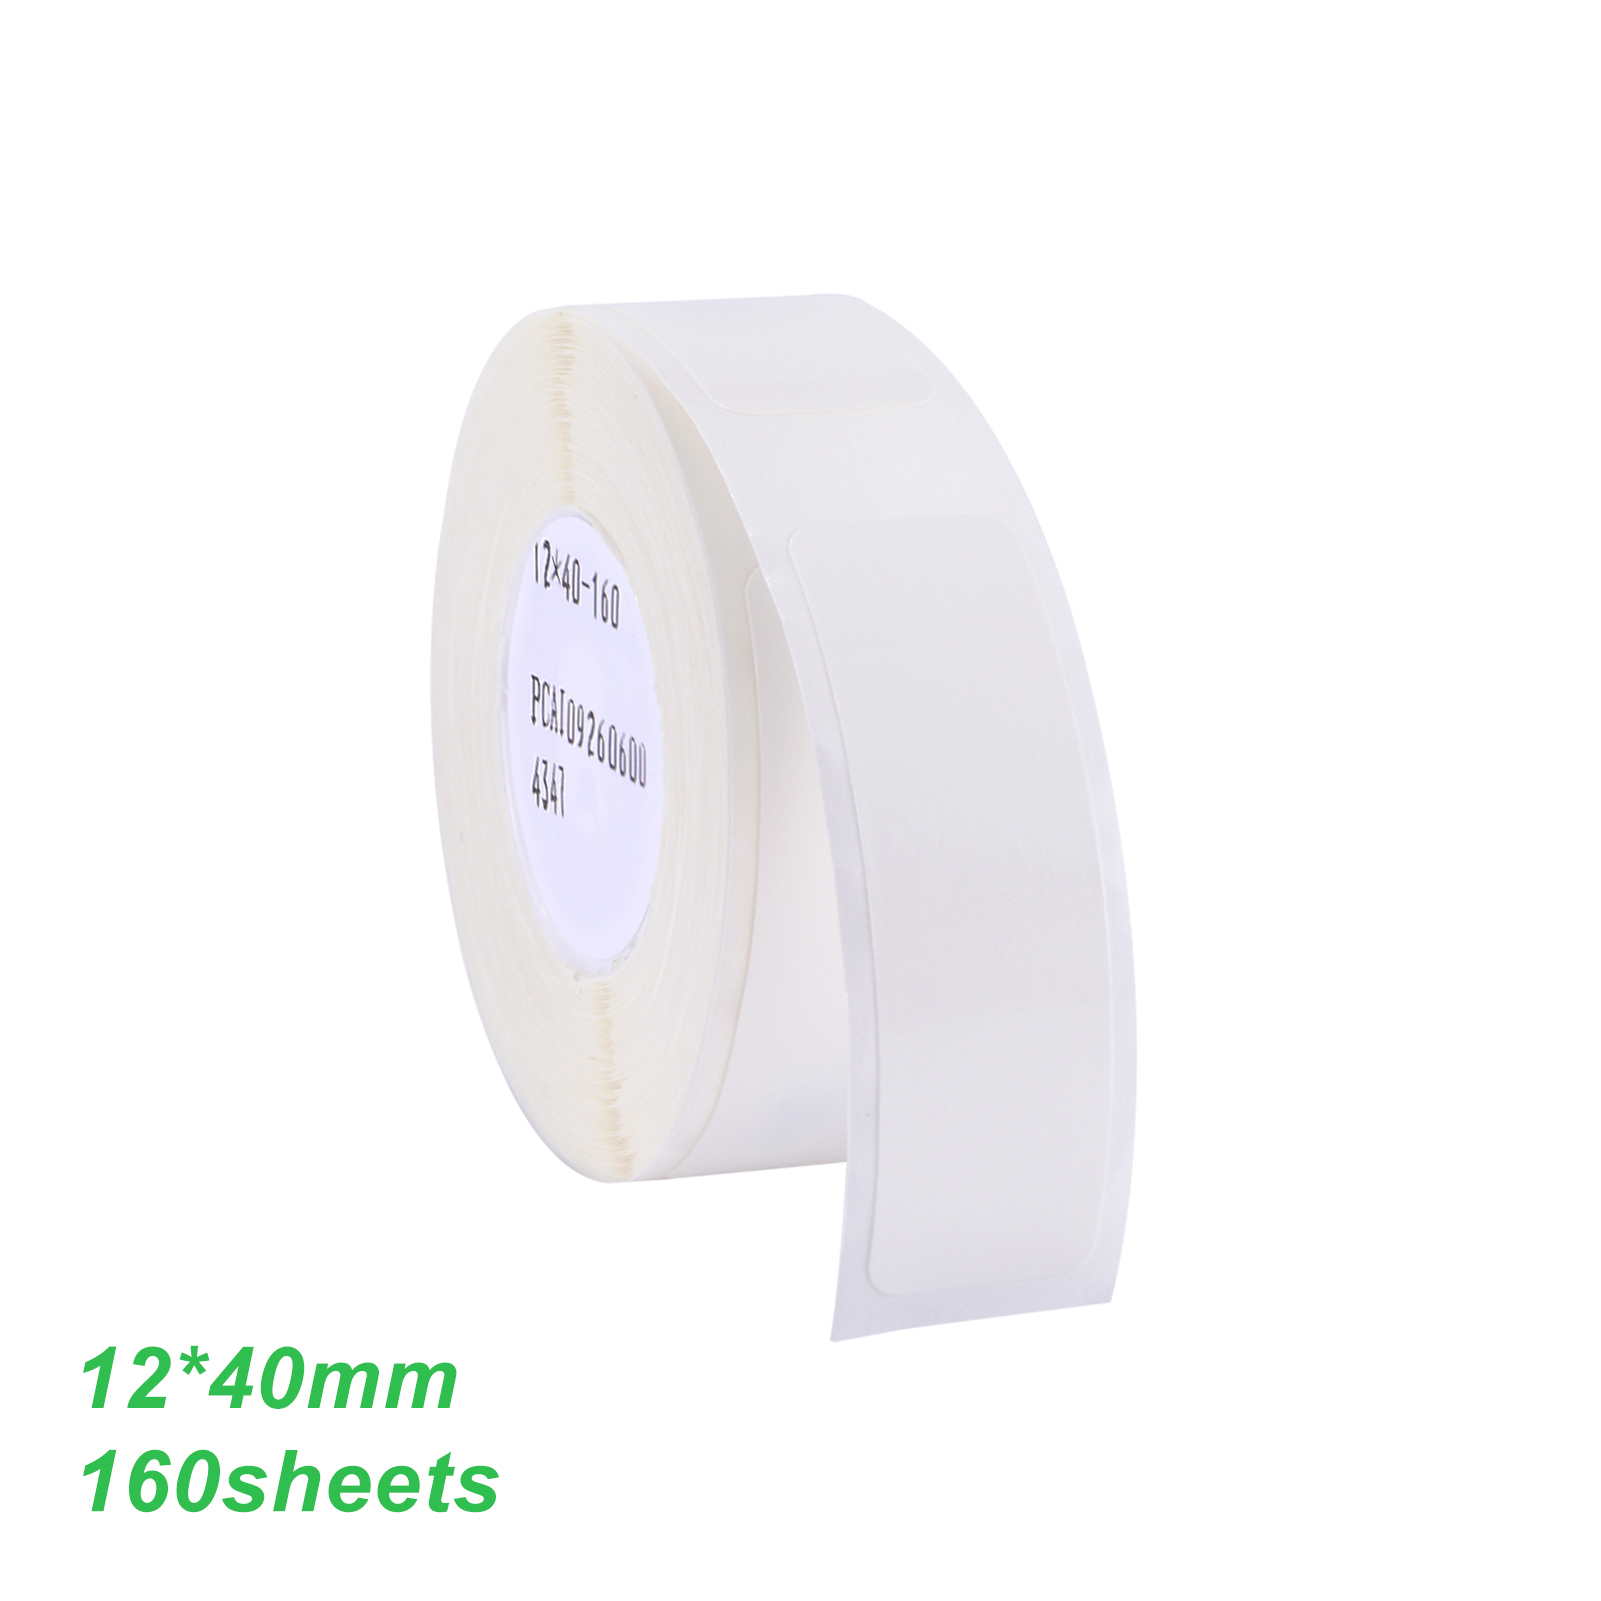 12*40mm 열 인쇄 레이블 종이 바코드 가격 크기 이름 빈 레이블 방수 찢어 홈 슈퍼마켓 케이터링